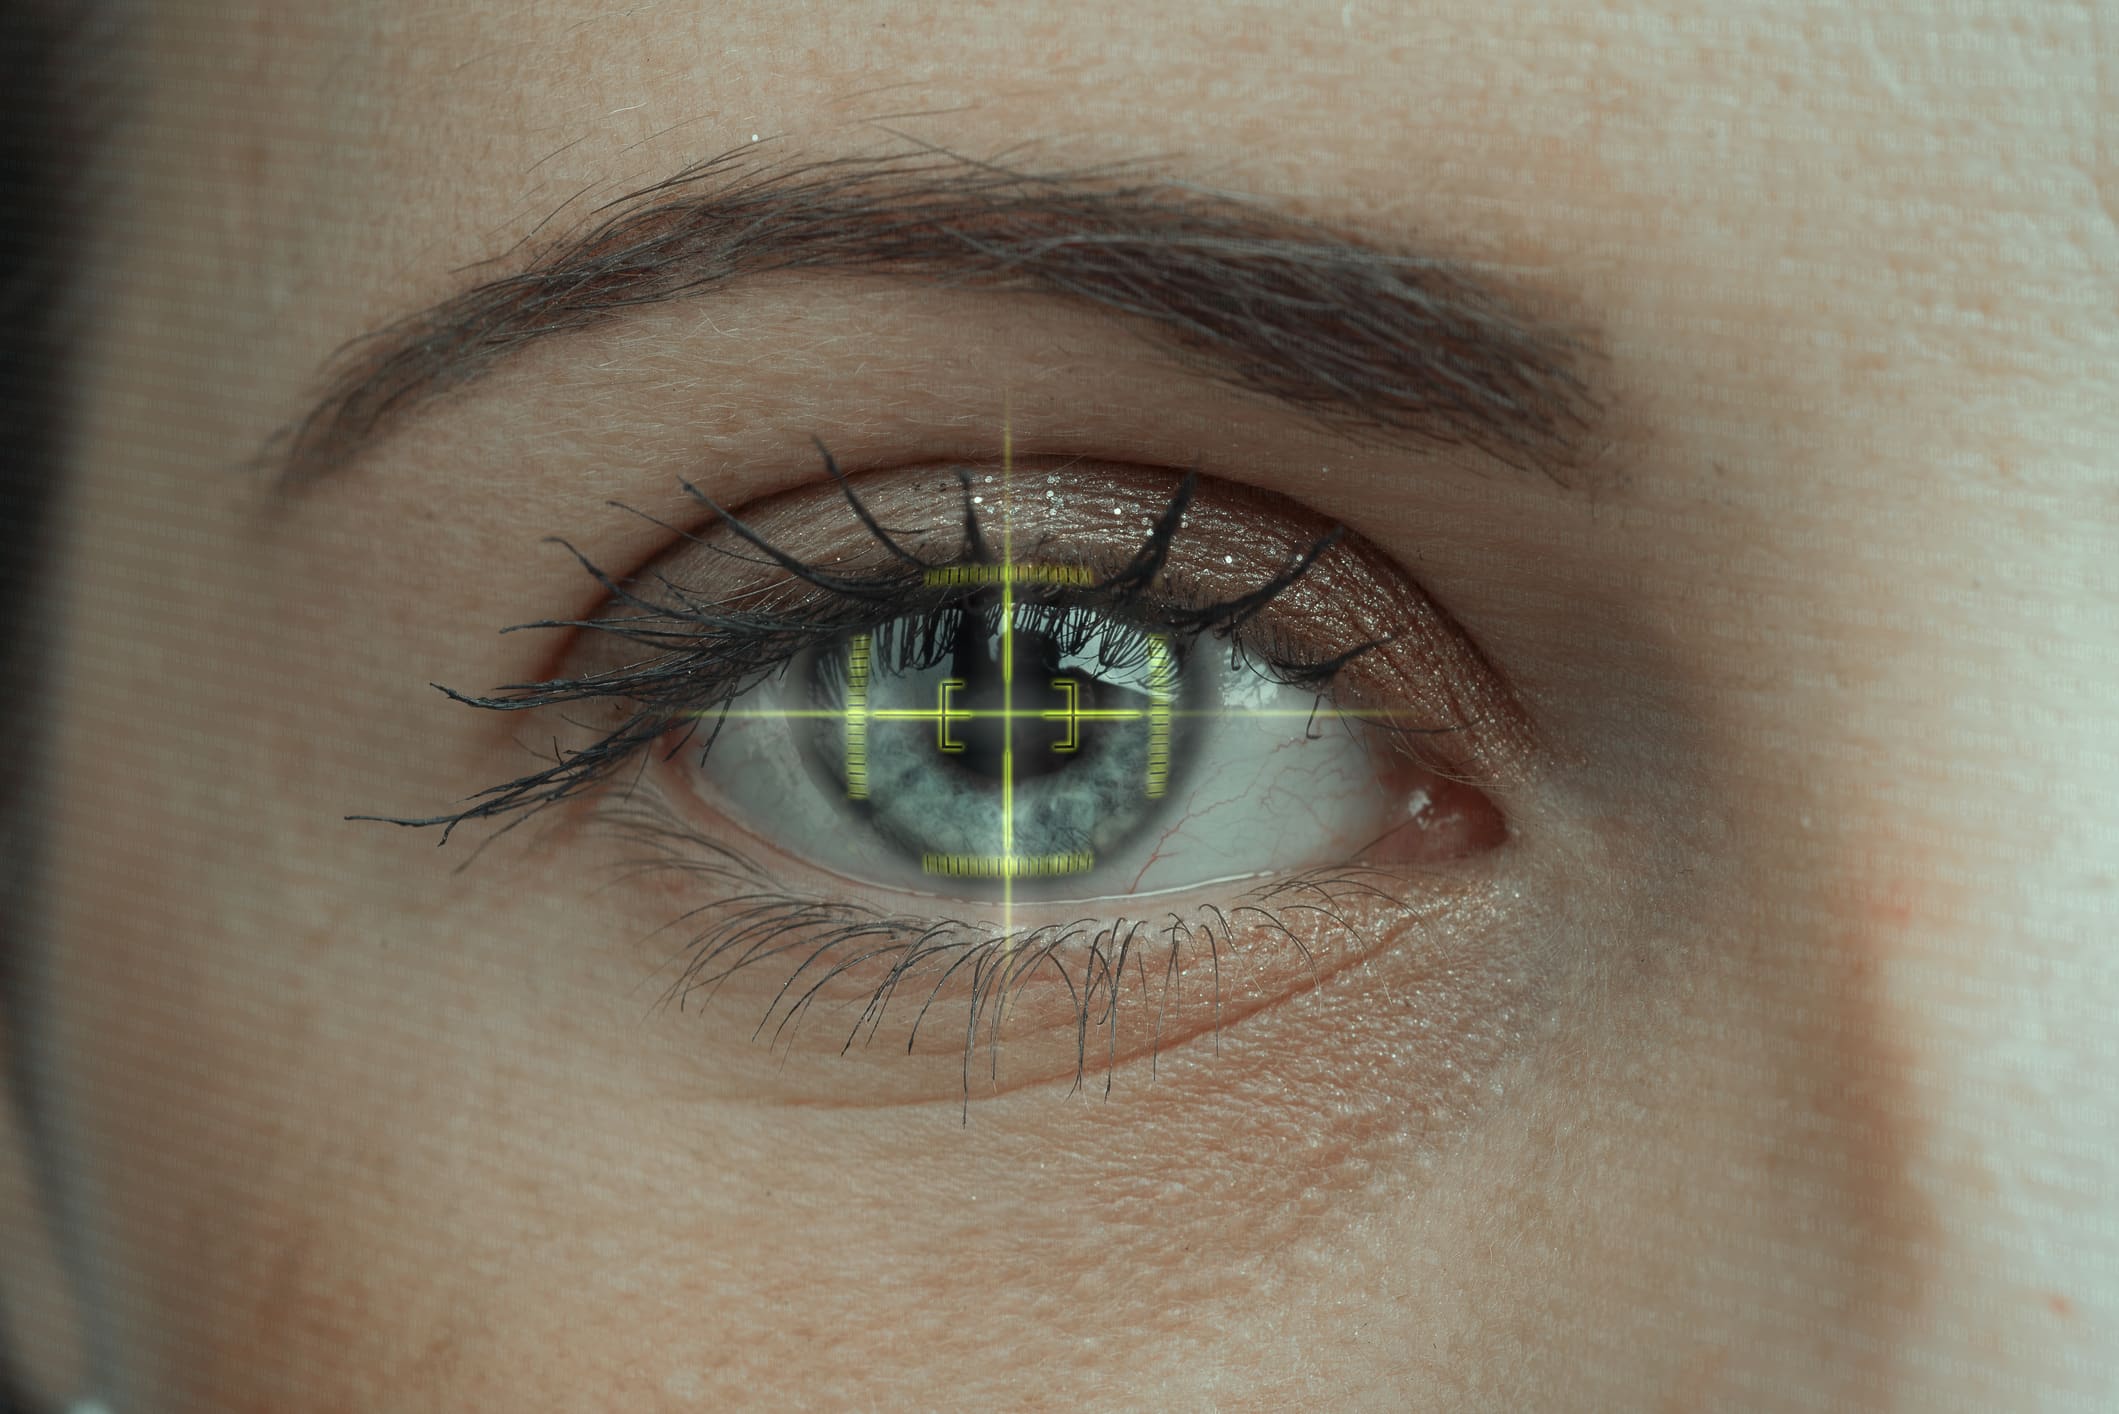 Biometric eye scan